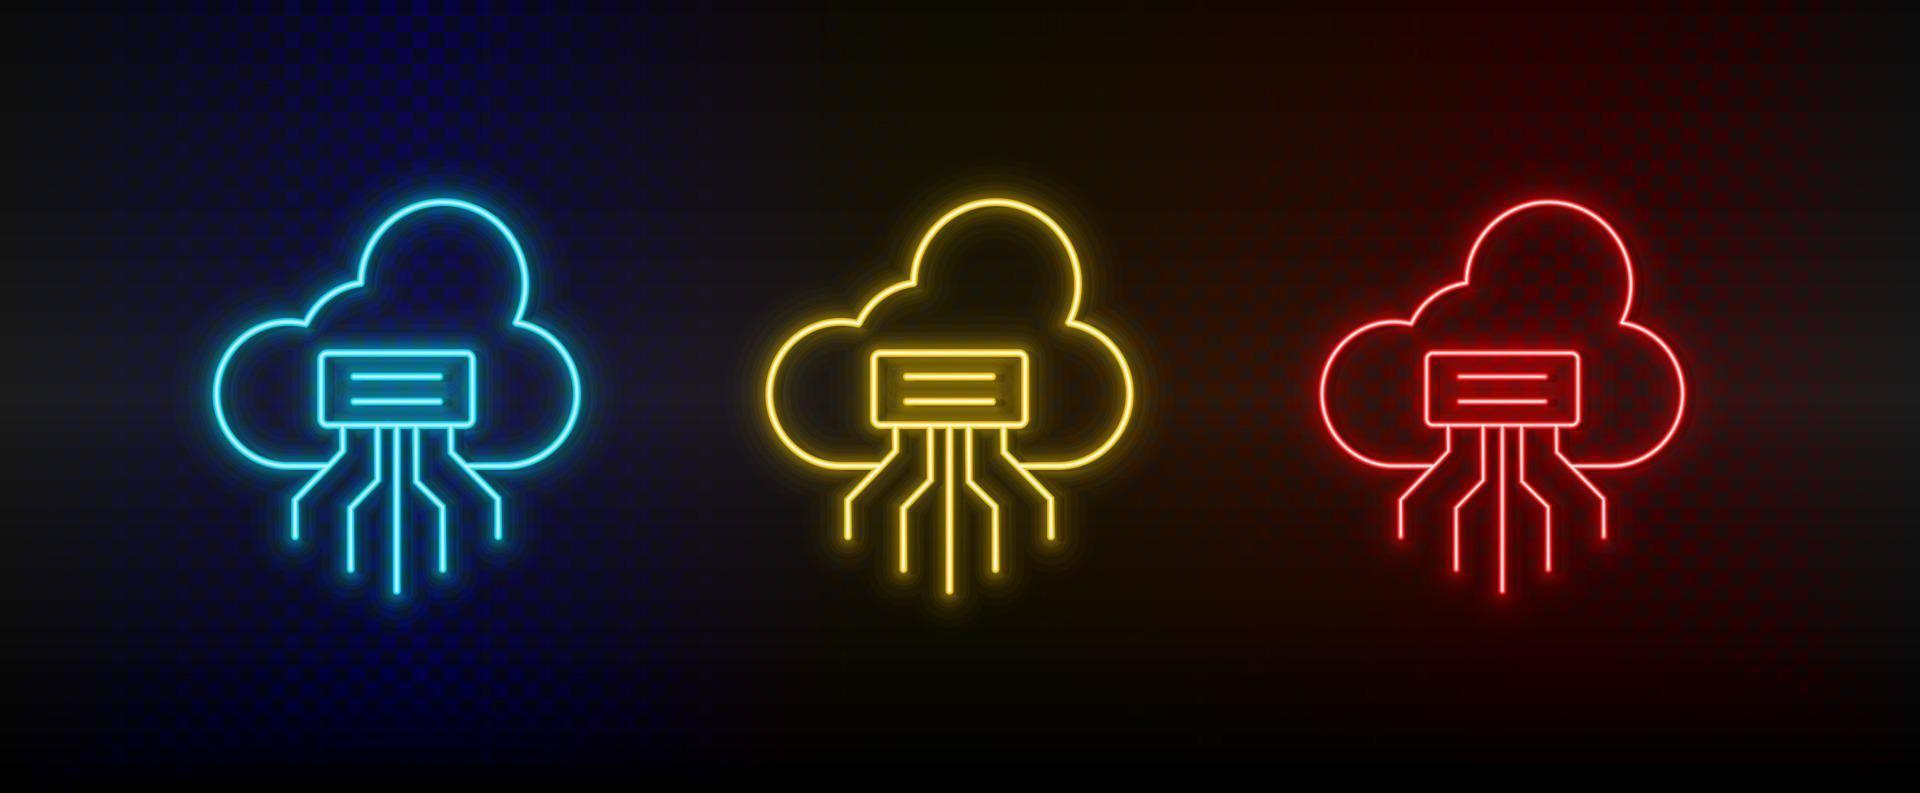 Neon- Symbol einstellen Wolke herunterladen. einstellen von Rot, Blau, Gelb Neon- Vektor Symbol auf Transparenz dunkel Hintergrund